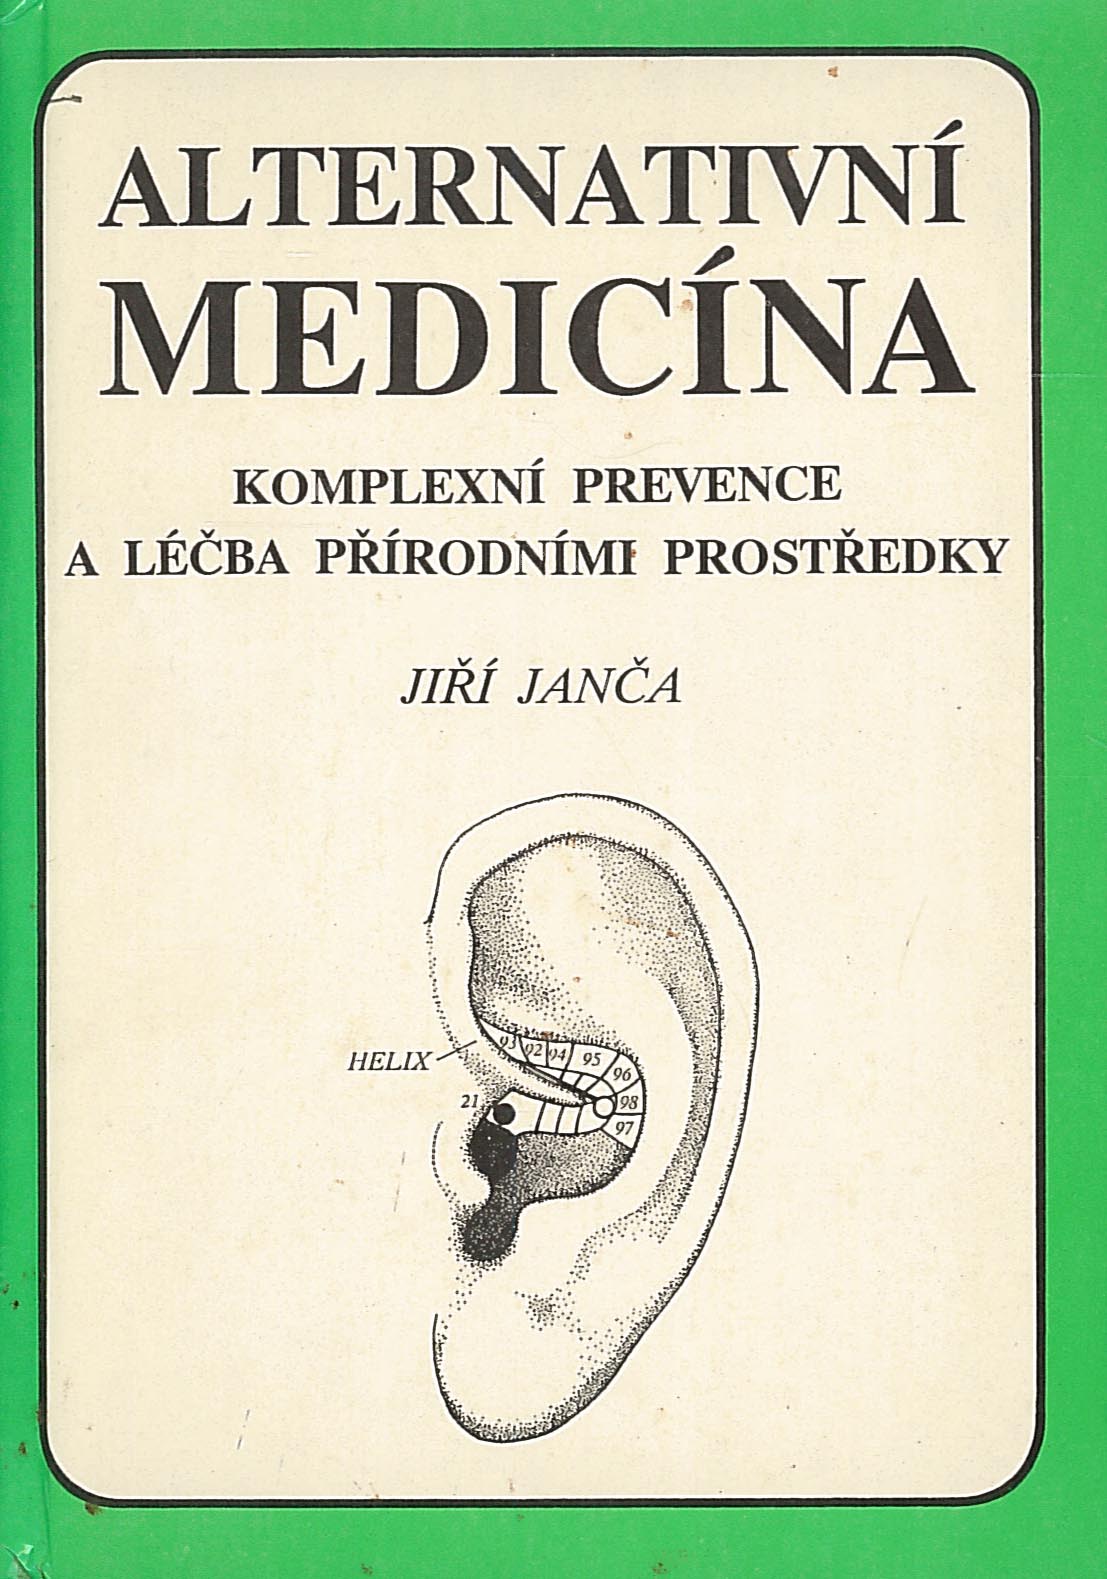 Alternativní medicína (Jiří Janča)